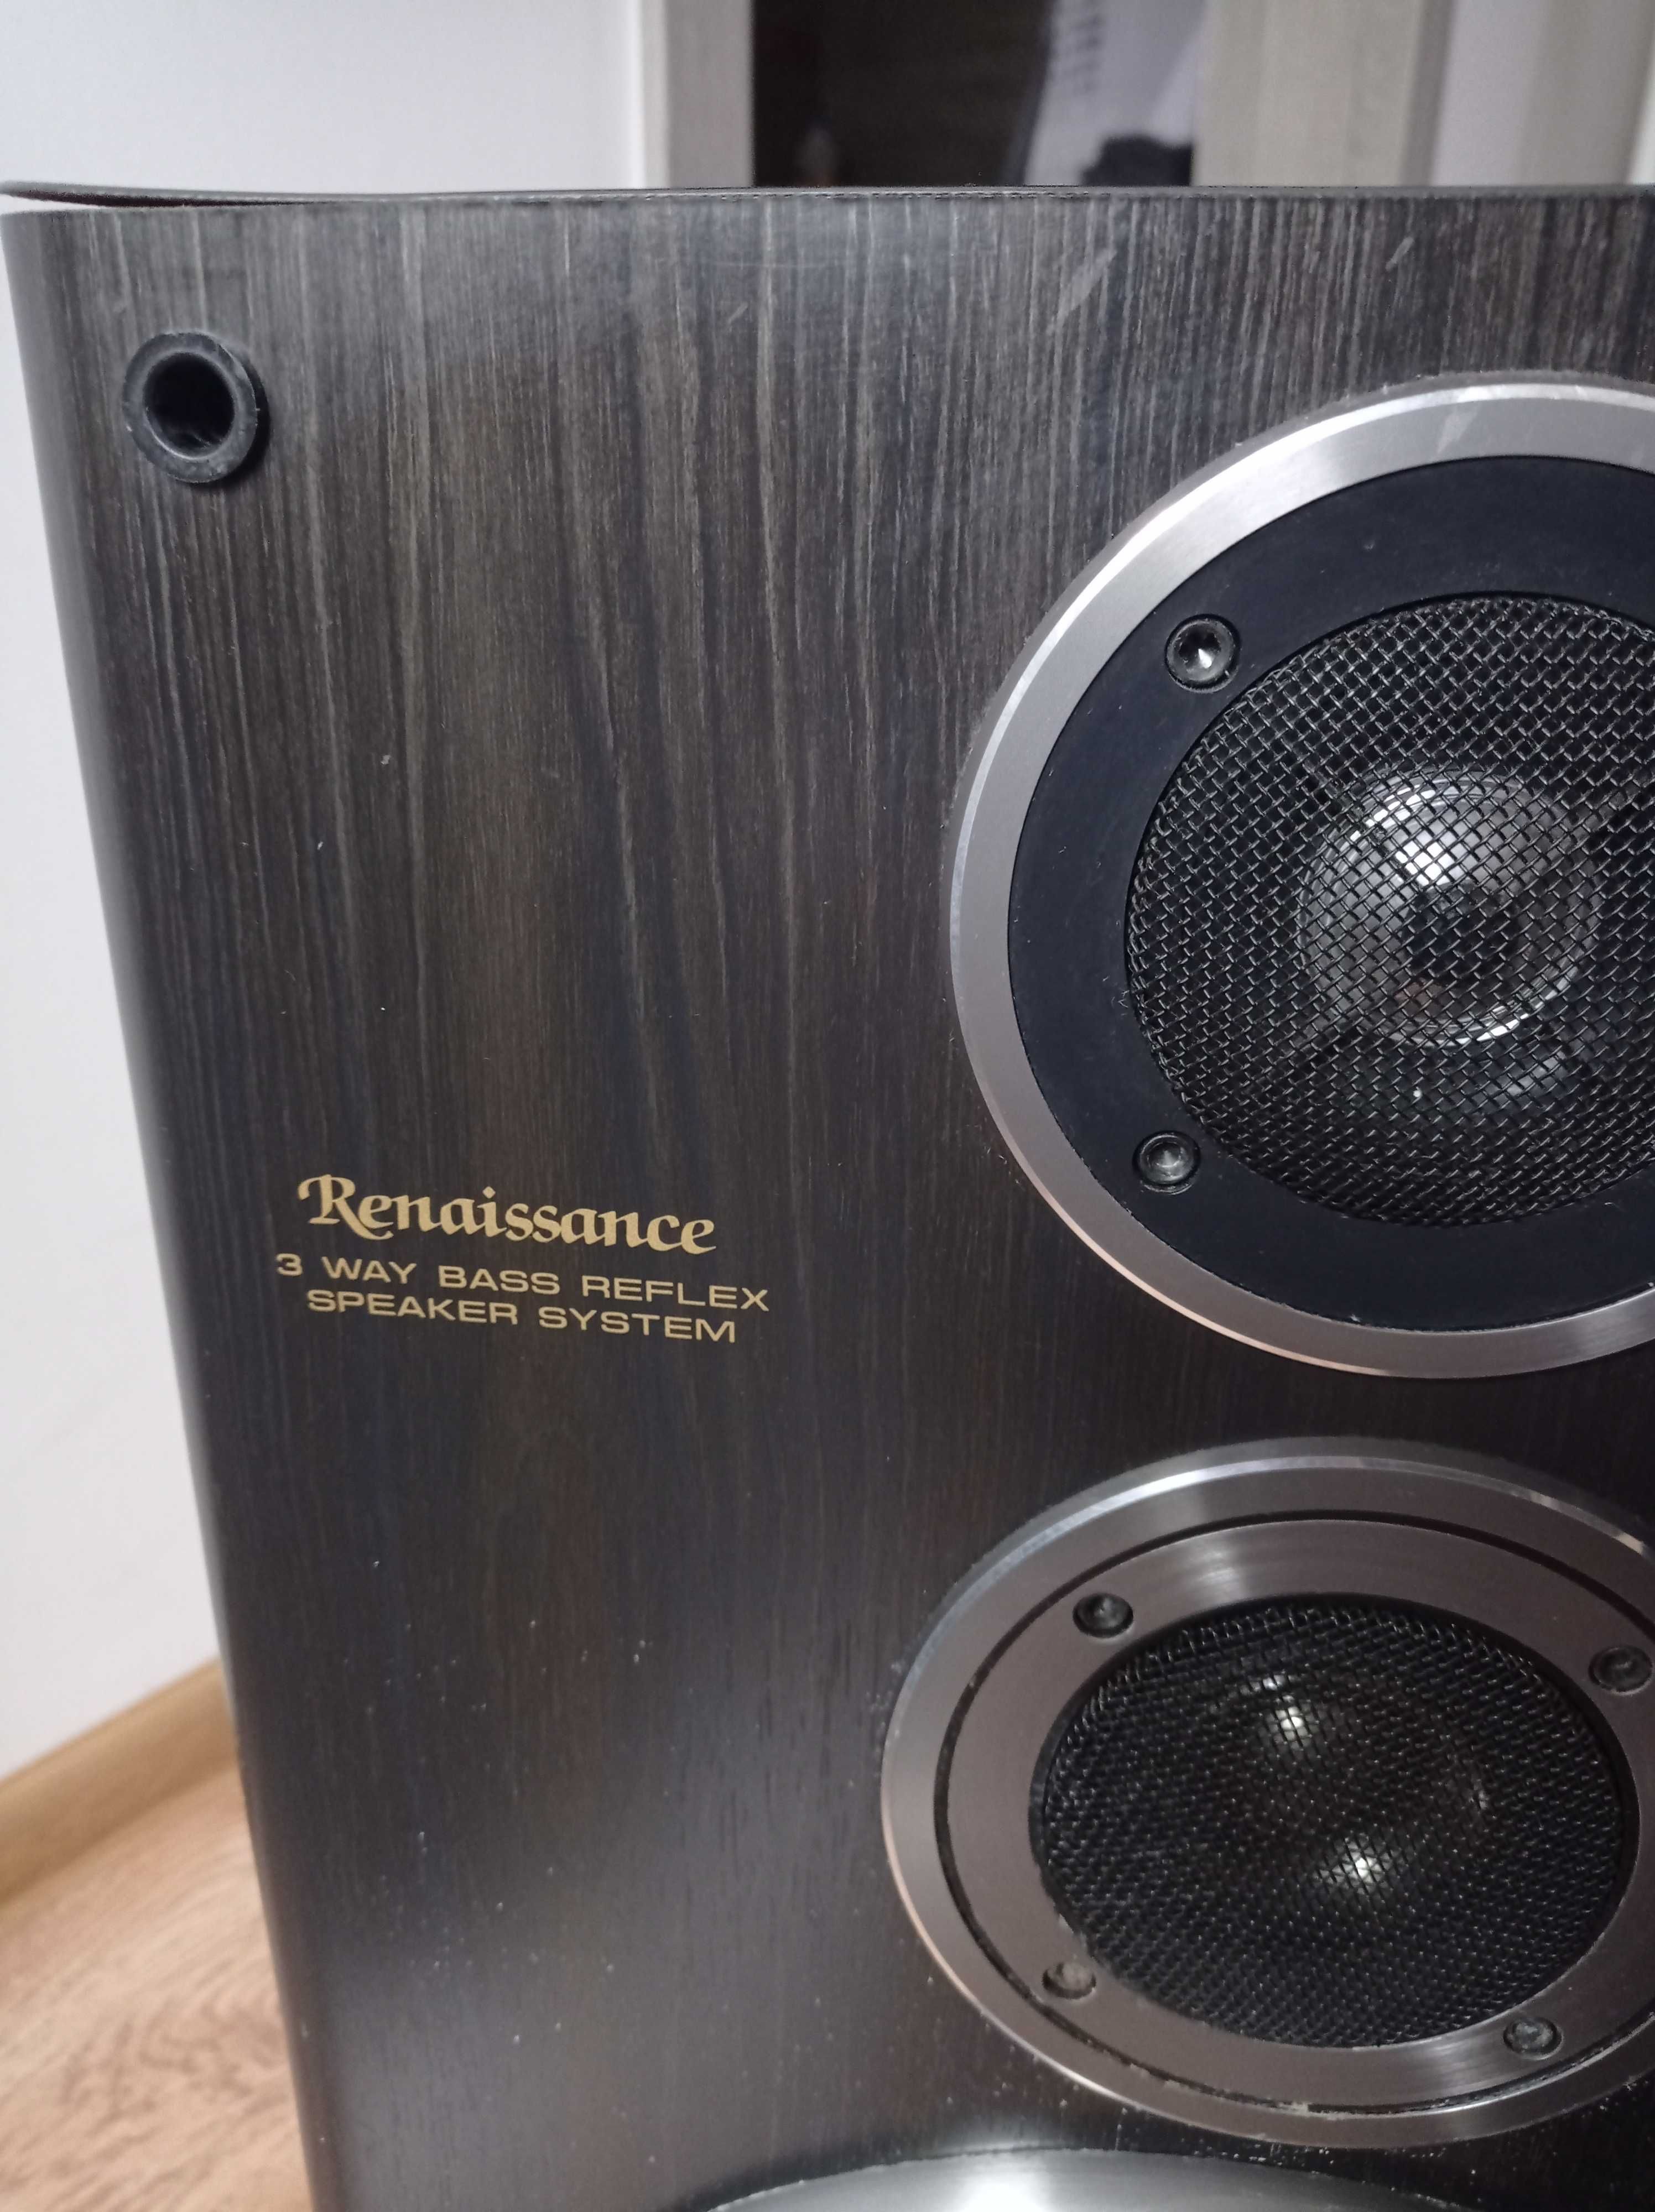 Głośniki SAMSUNG Renaissance PS-M1000 dwie kolumny po 100W każda